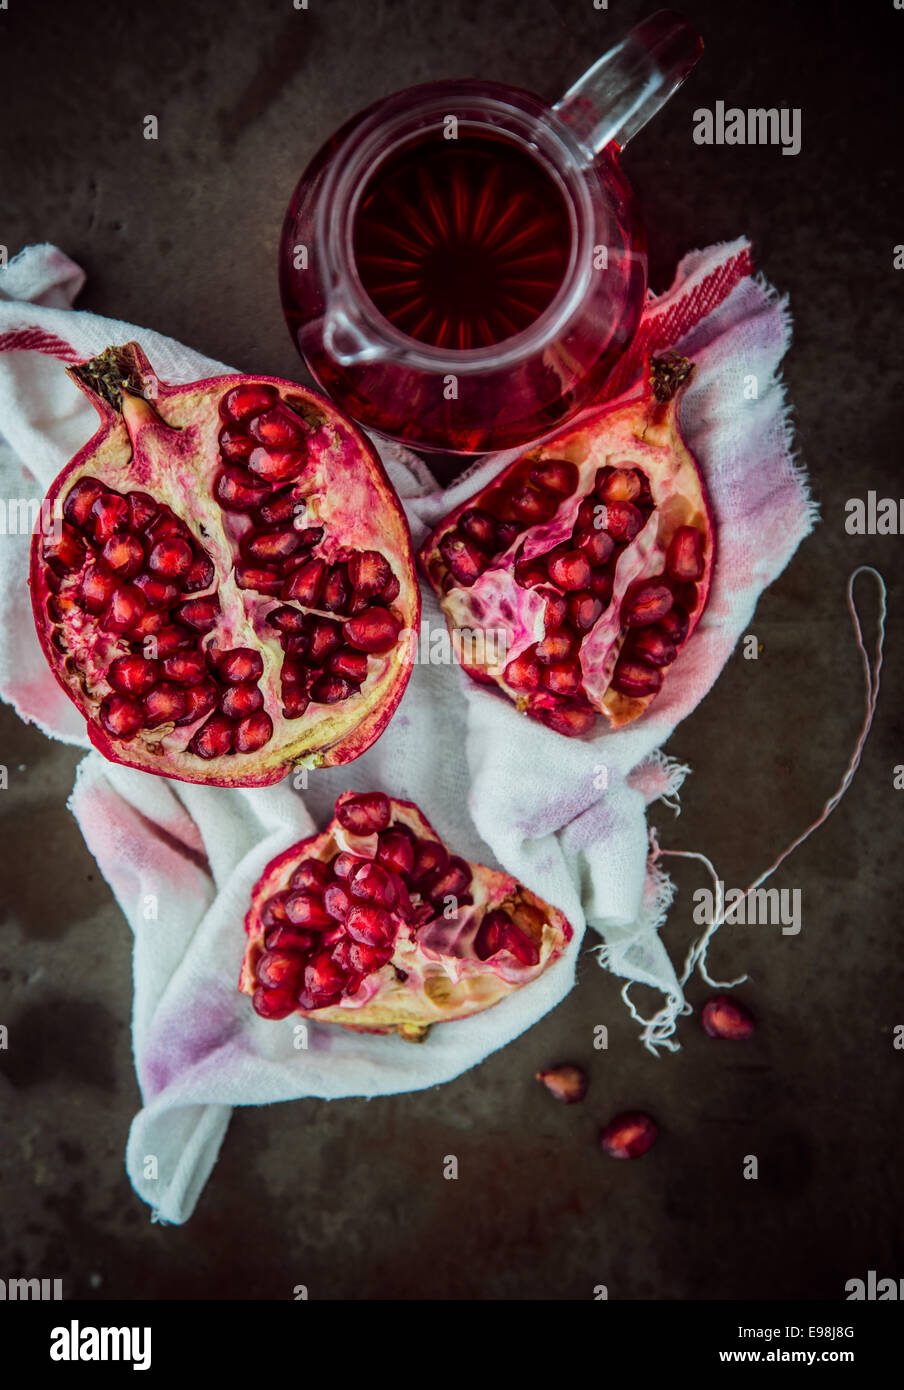 Herstellung frischer Granatapfelsaft mit einem Overhead einer gebrochenen offenen Frucht anzeigen die reifen roten Samen auf einem gefärbten Baumwolltuch mit einem Krug frisch zubereitete Saft neben anzeigen Stockfoto